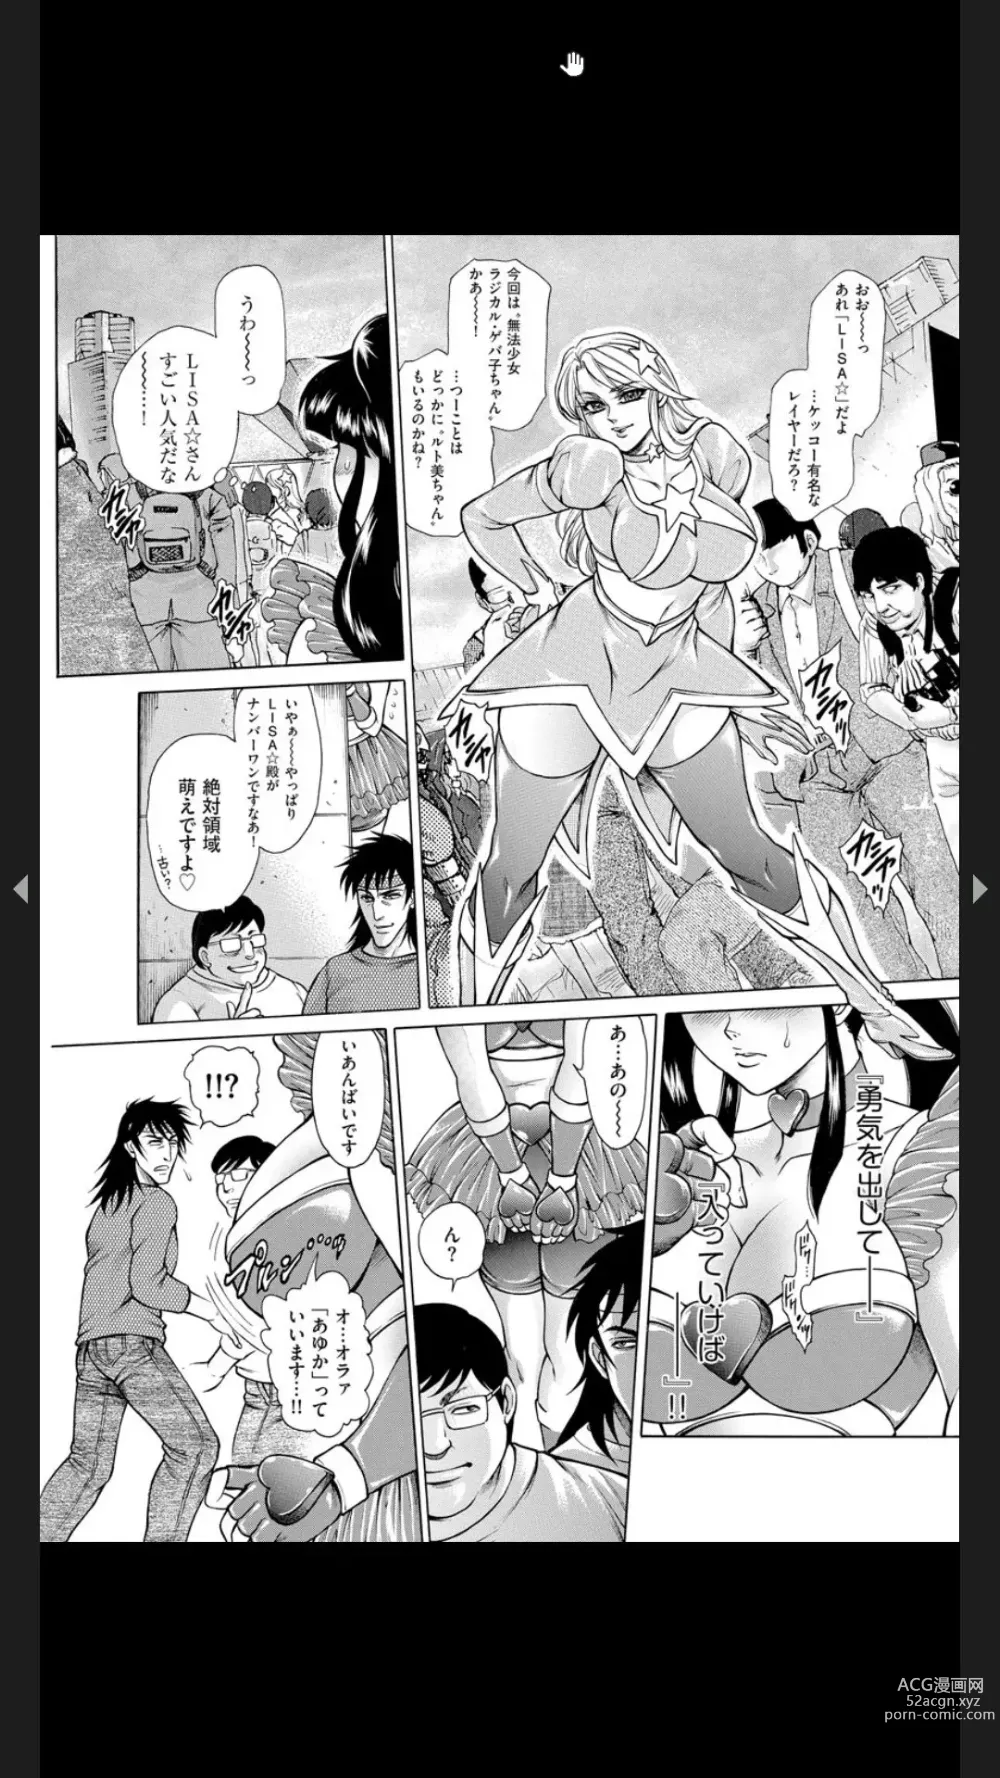 Page 187 of manga Injuku Meniku Mugobatsu